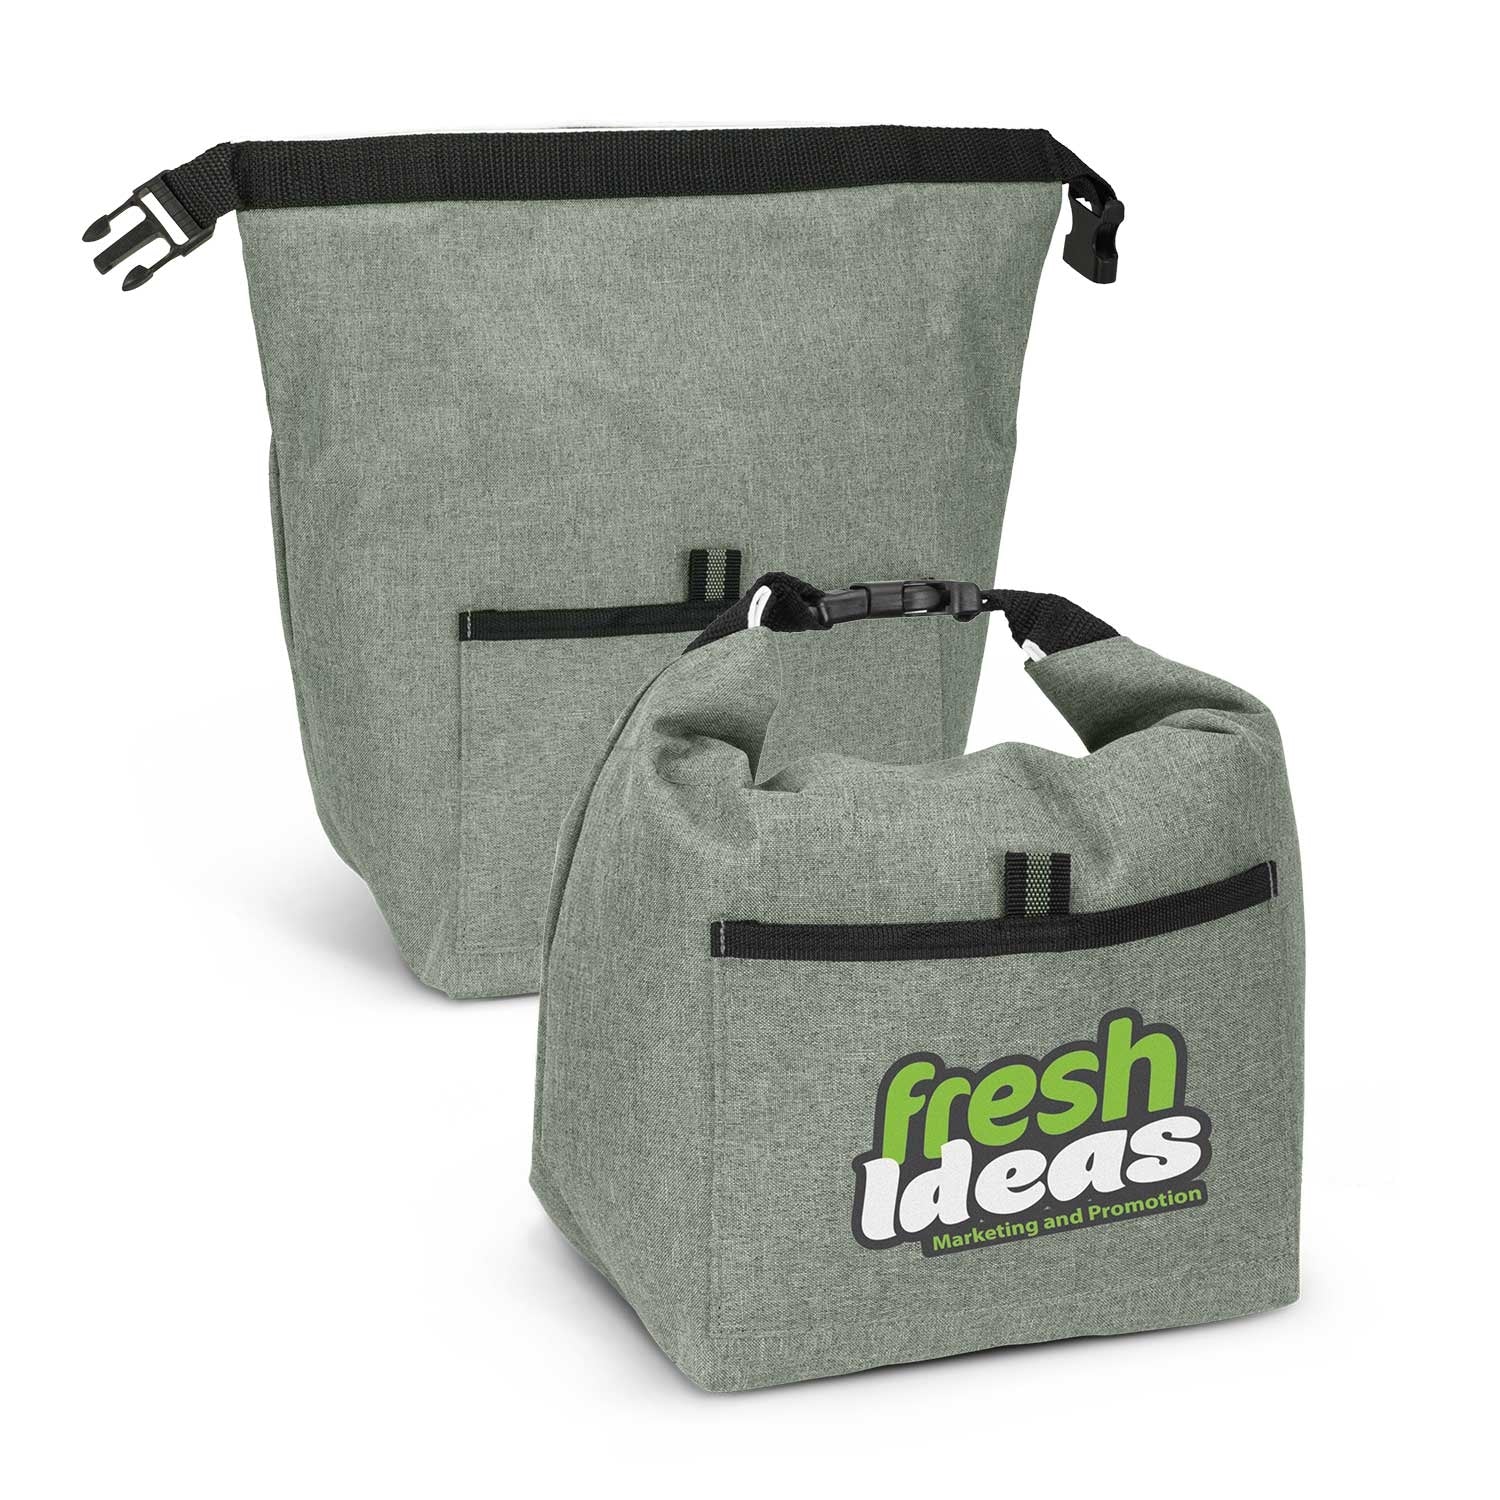 Stock 9 litre Lunch Cooler Bag (SNB-72T) - greenpac.com.au